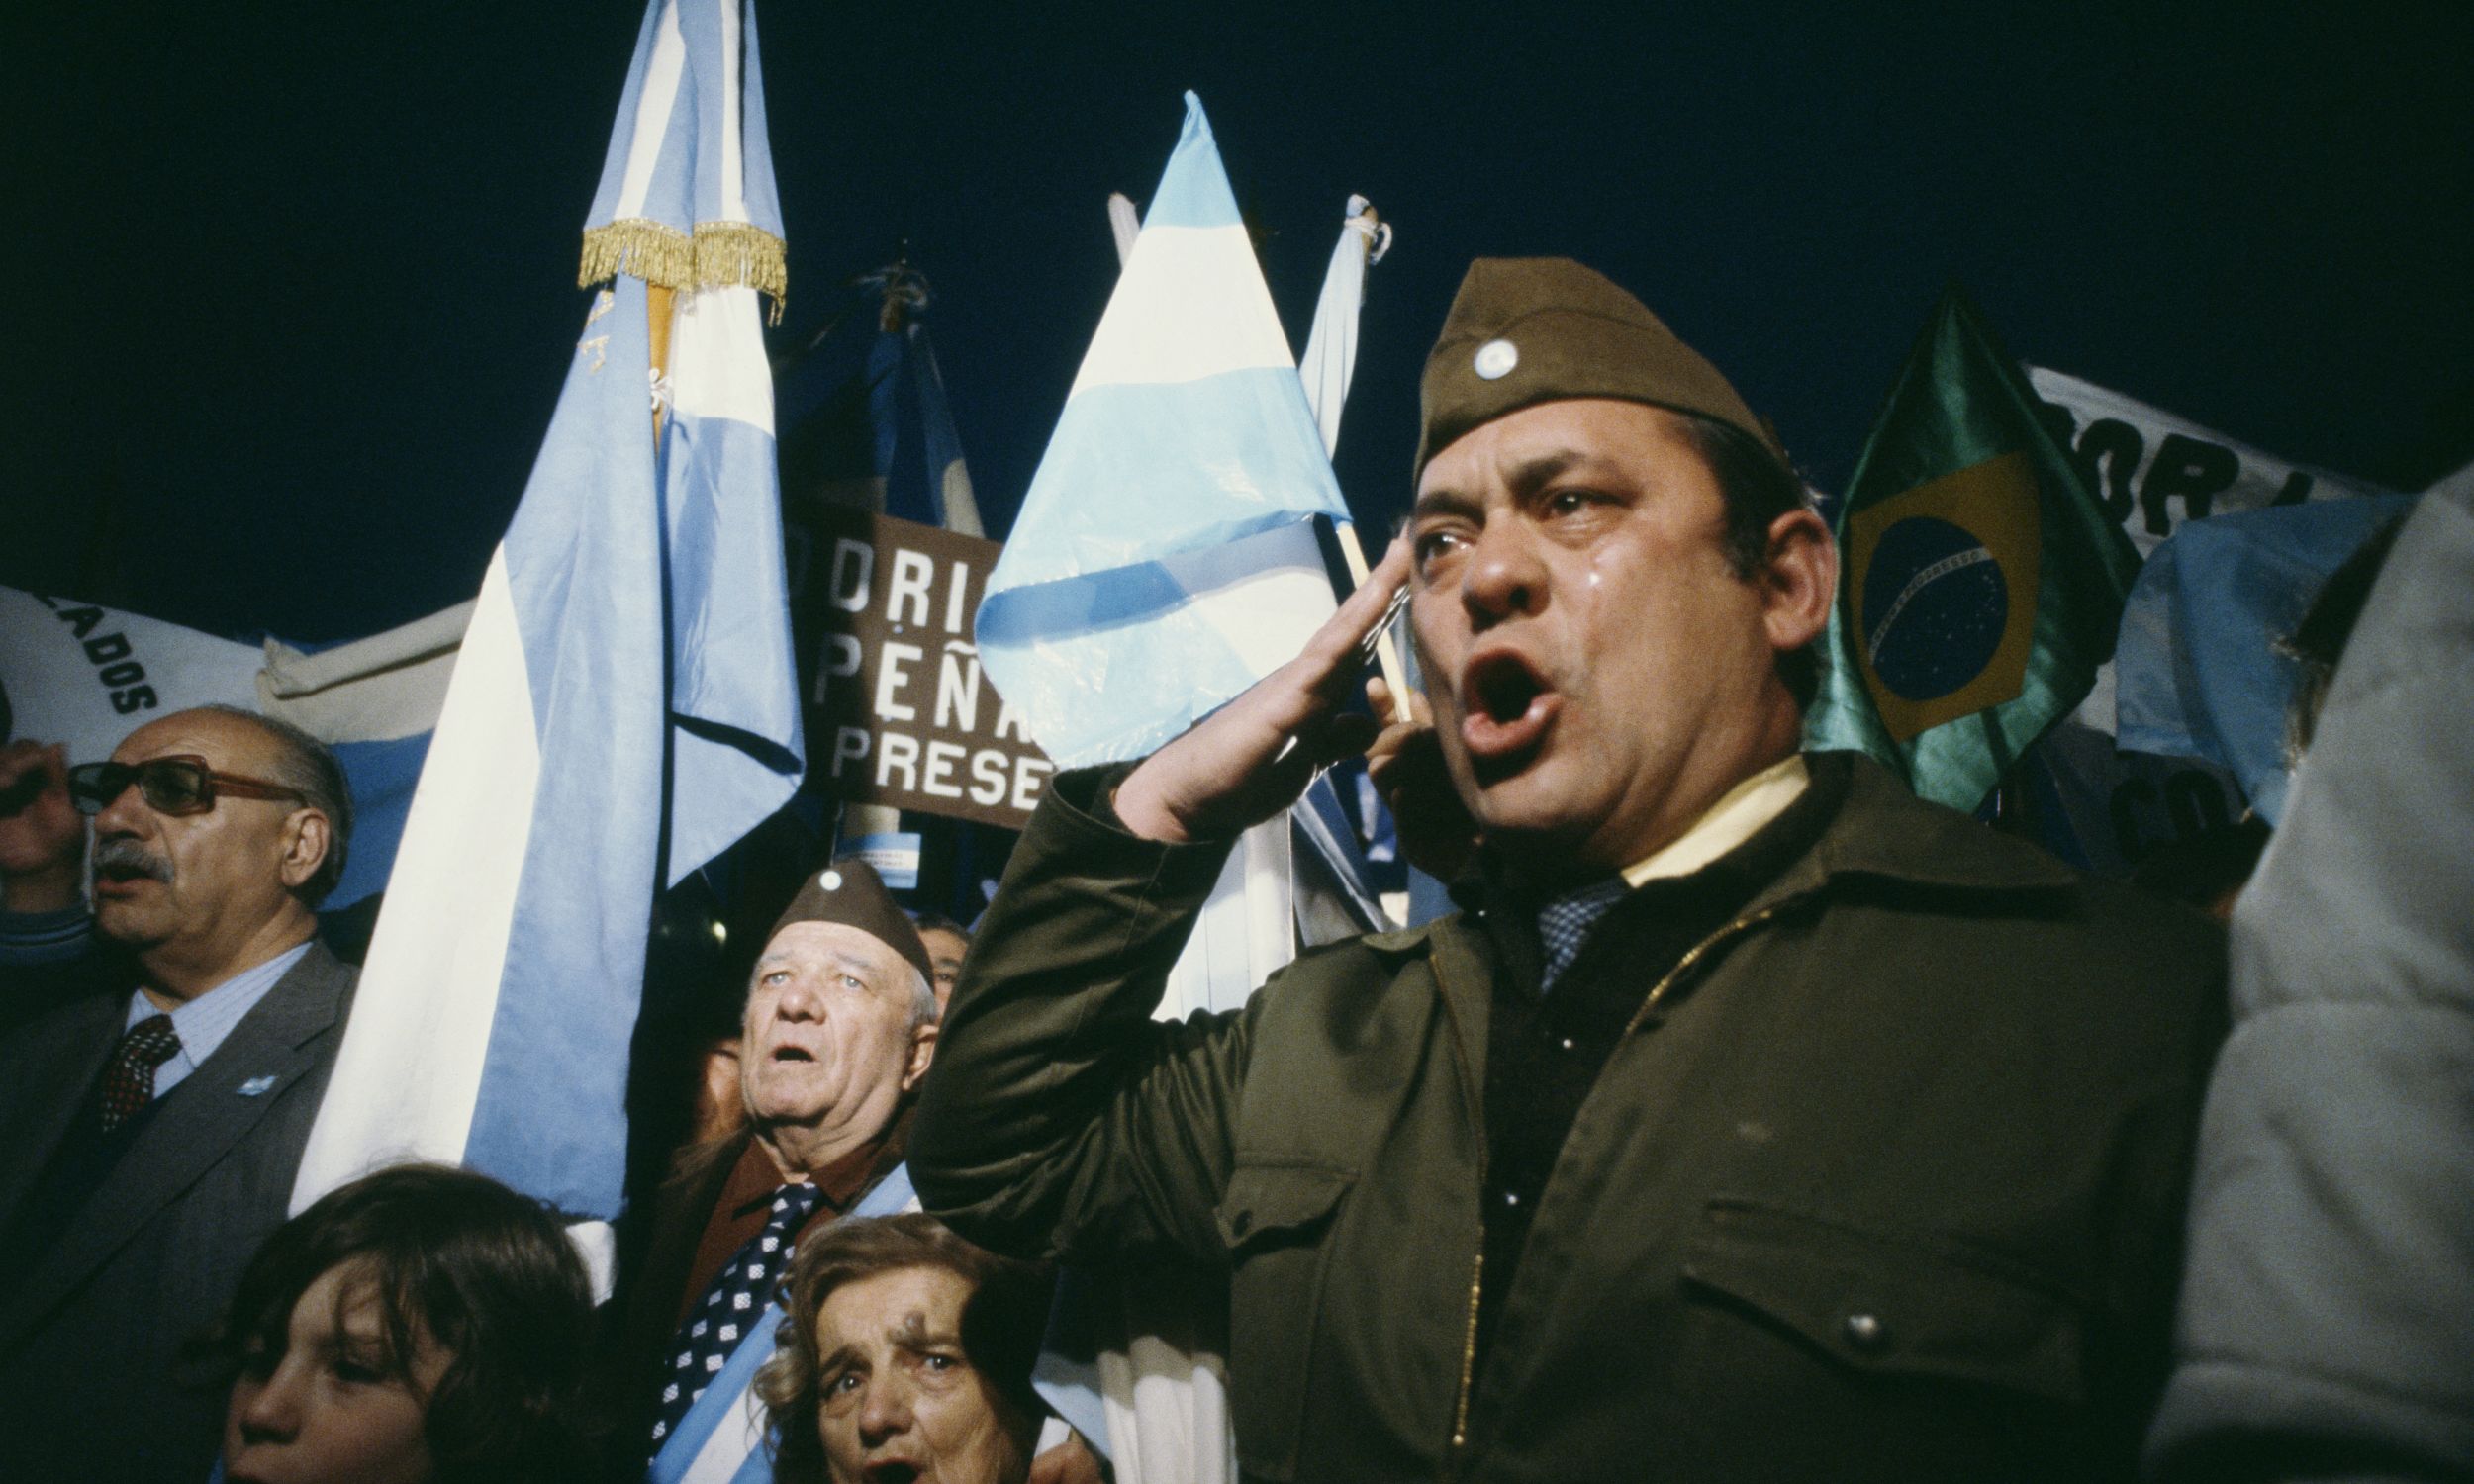 26 kwietnia 1982, argentyńcy rezerwiści śpiewają hymn narodowy. Fot. Alain Nogues/Sygma/Sygma via Getty Images